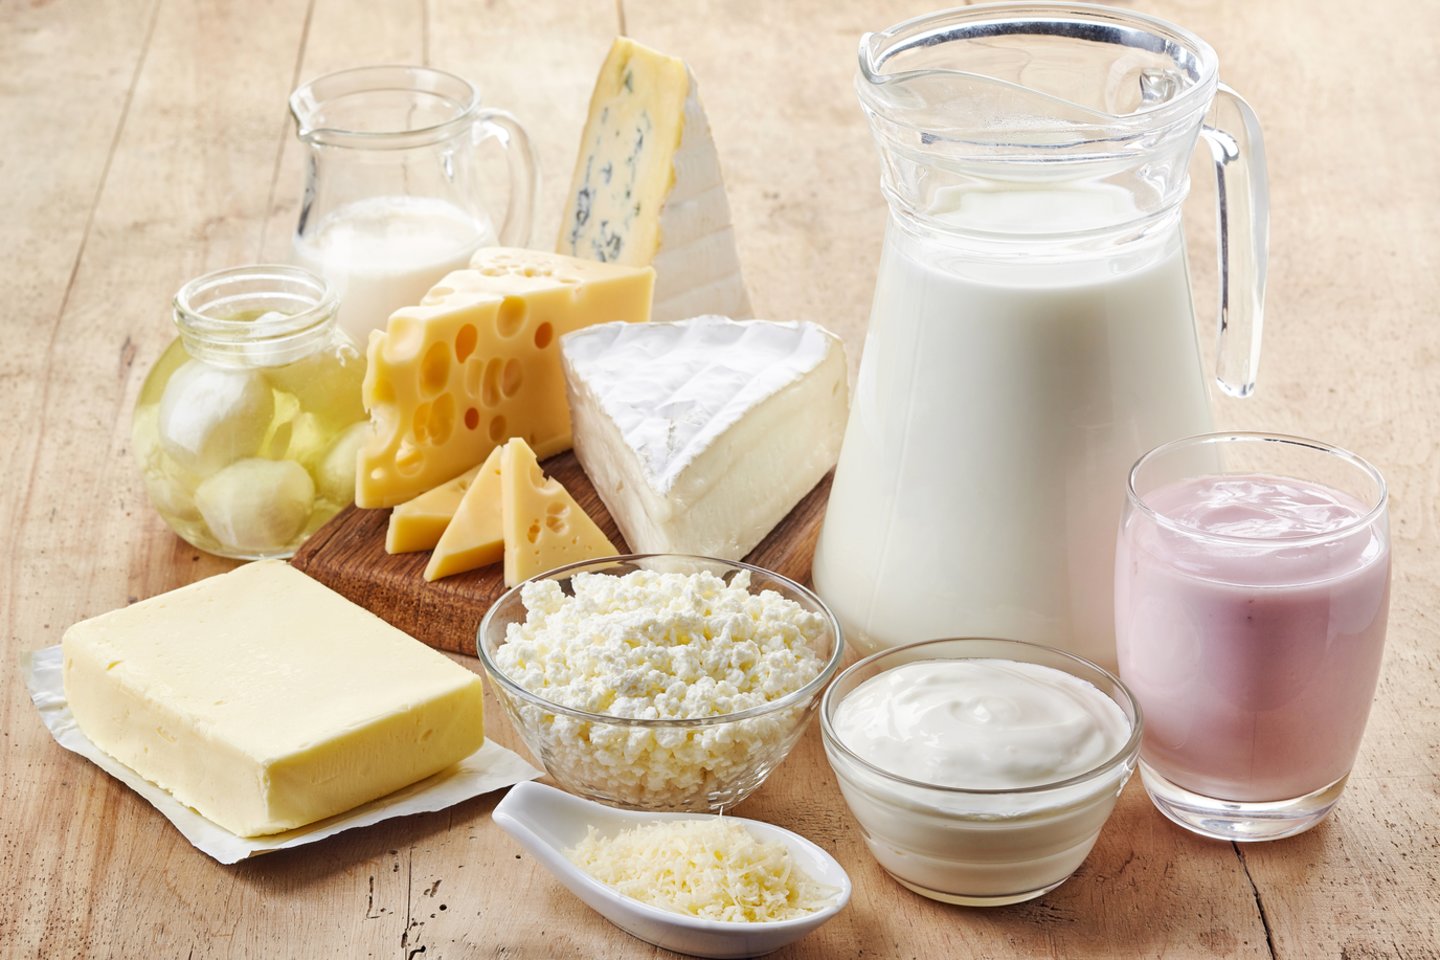 Pieno produktai mūsų organizmui teikia didelę naudą.<br>123rf nuotr.